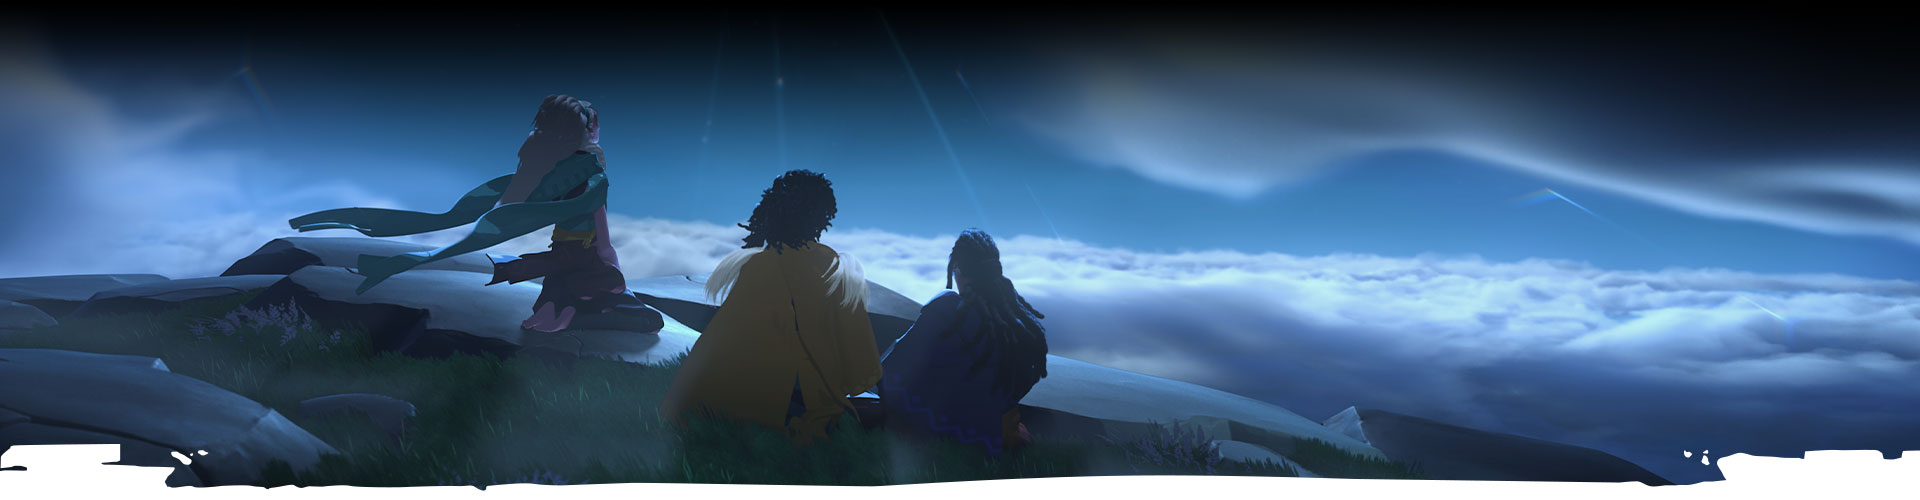 Trois personnages regardent le ciel nocturne. 